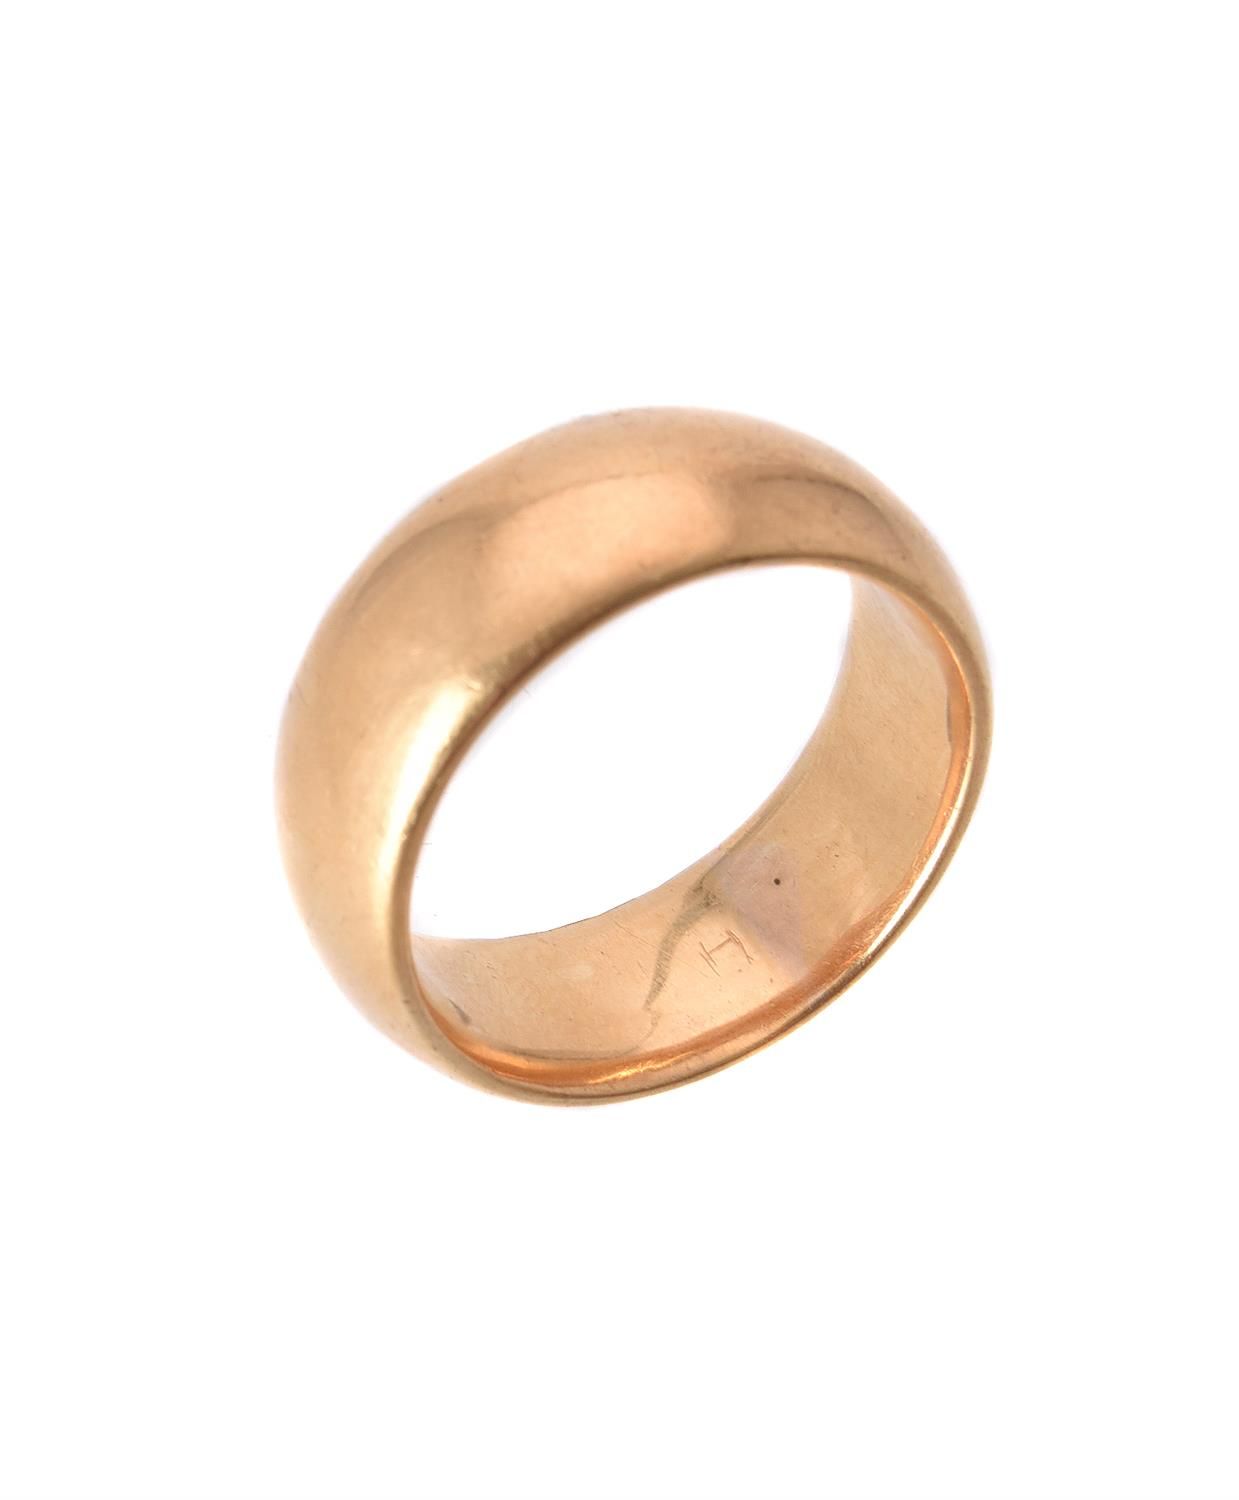 An 18 carat gold broad band ring Un anello a fascia larga in oro 18 carati, la f&hellip;